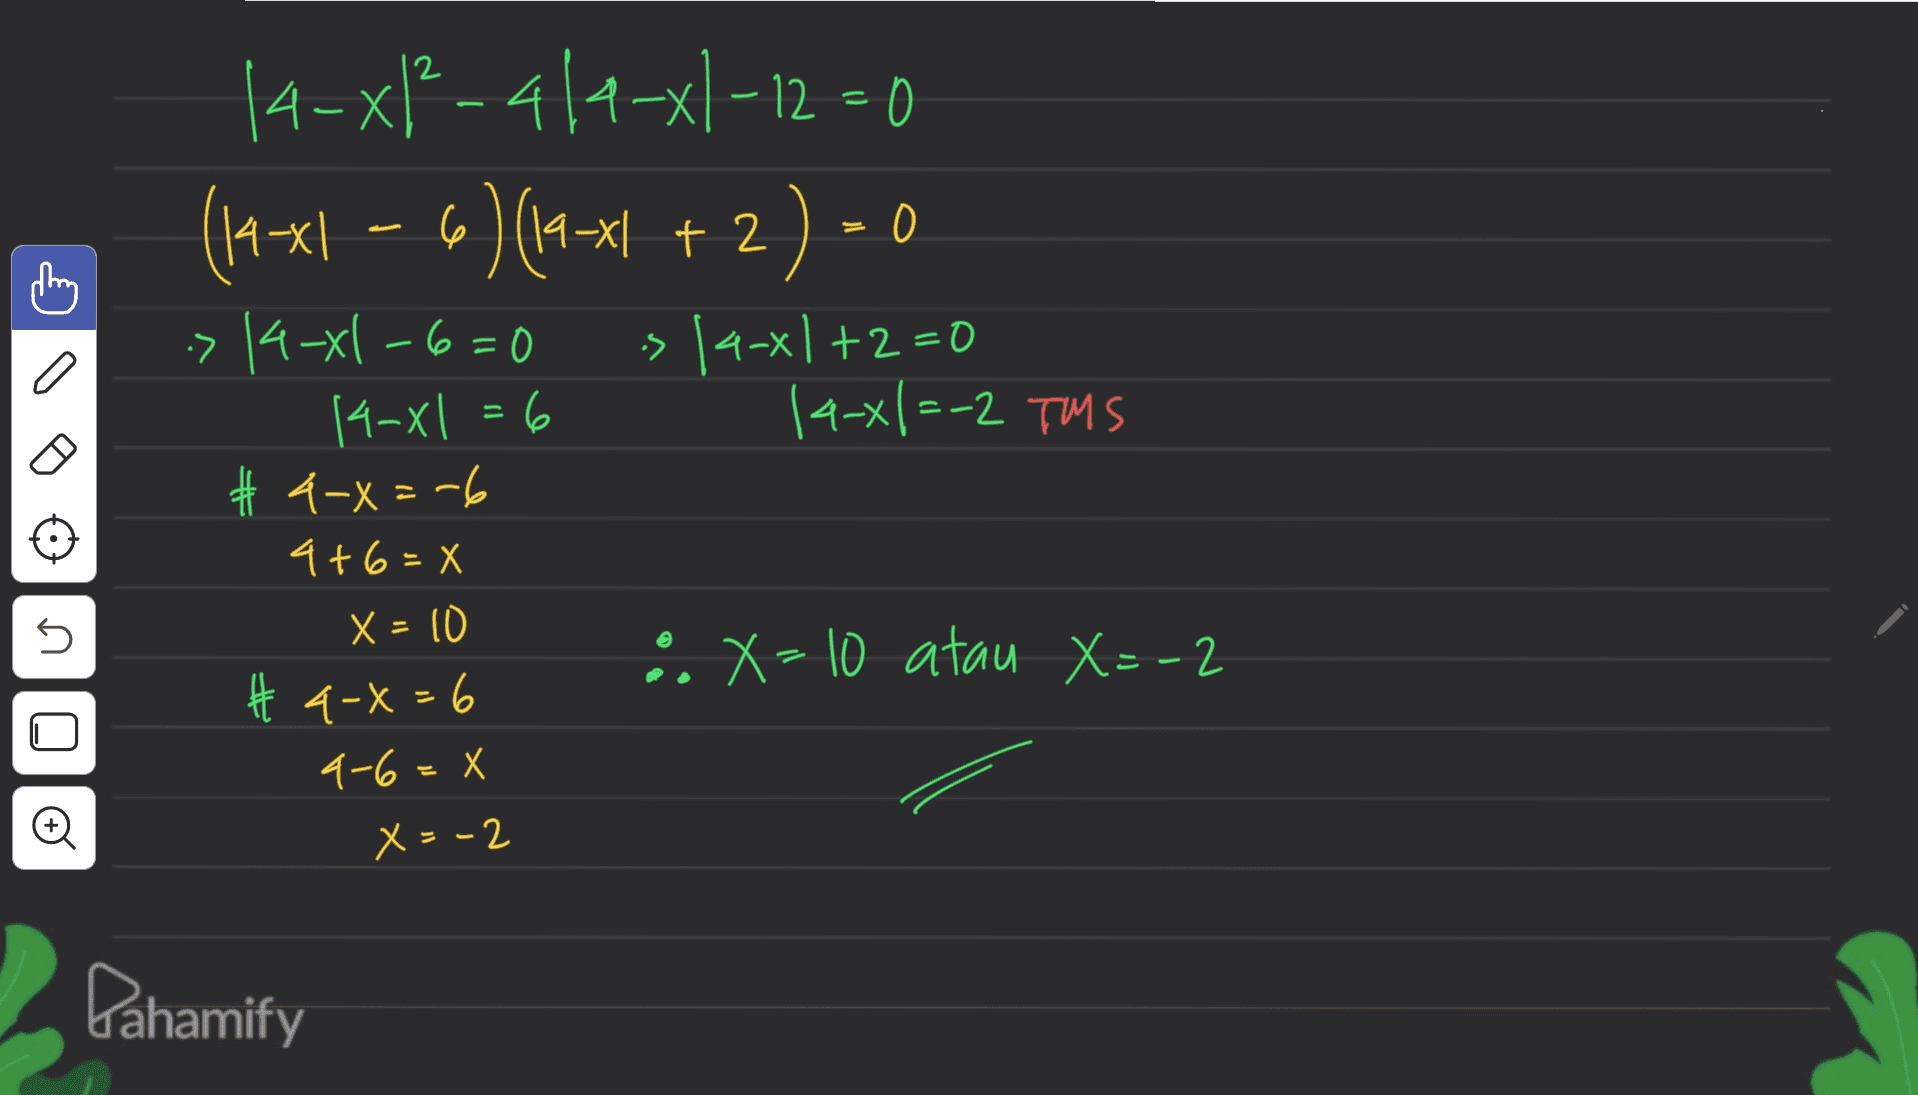 14-x/²-4/a-xl-12=0 (145x1 – 6 ) (19-x1 ! +2) - 0 -> 14-x1 -6 = 0 > 14-x1 +2=0 14-x1 = 6 14-x|=-2 TMS # 4-x=-6 = 4+6=X U :X=10 atau X=-2 X = 10 # 4-X = 6 4-6=x Oo x = -2 Pahamify 